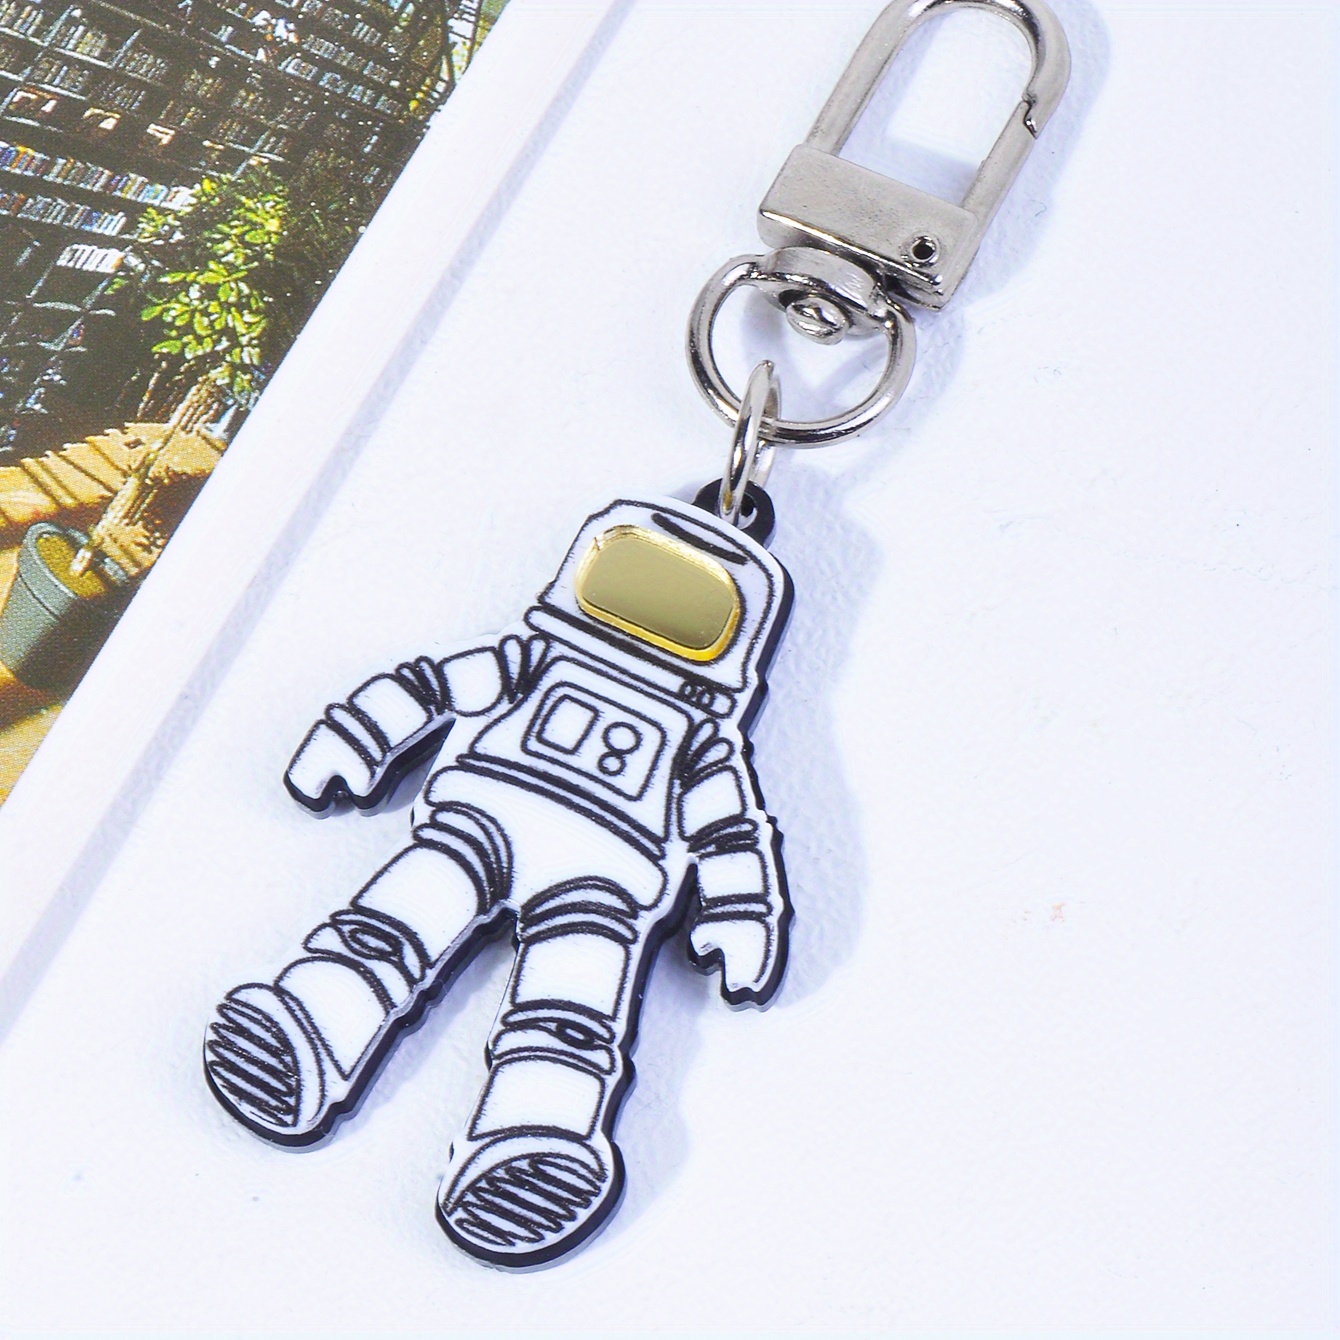 Louis Vuitton, Accessories, Cute Louis Vuitton Silver Astronaut Key Chain